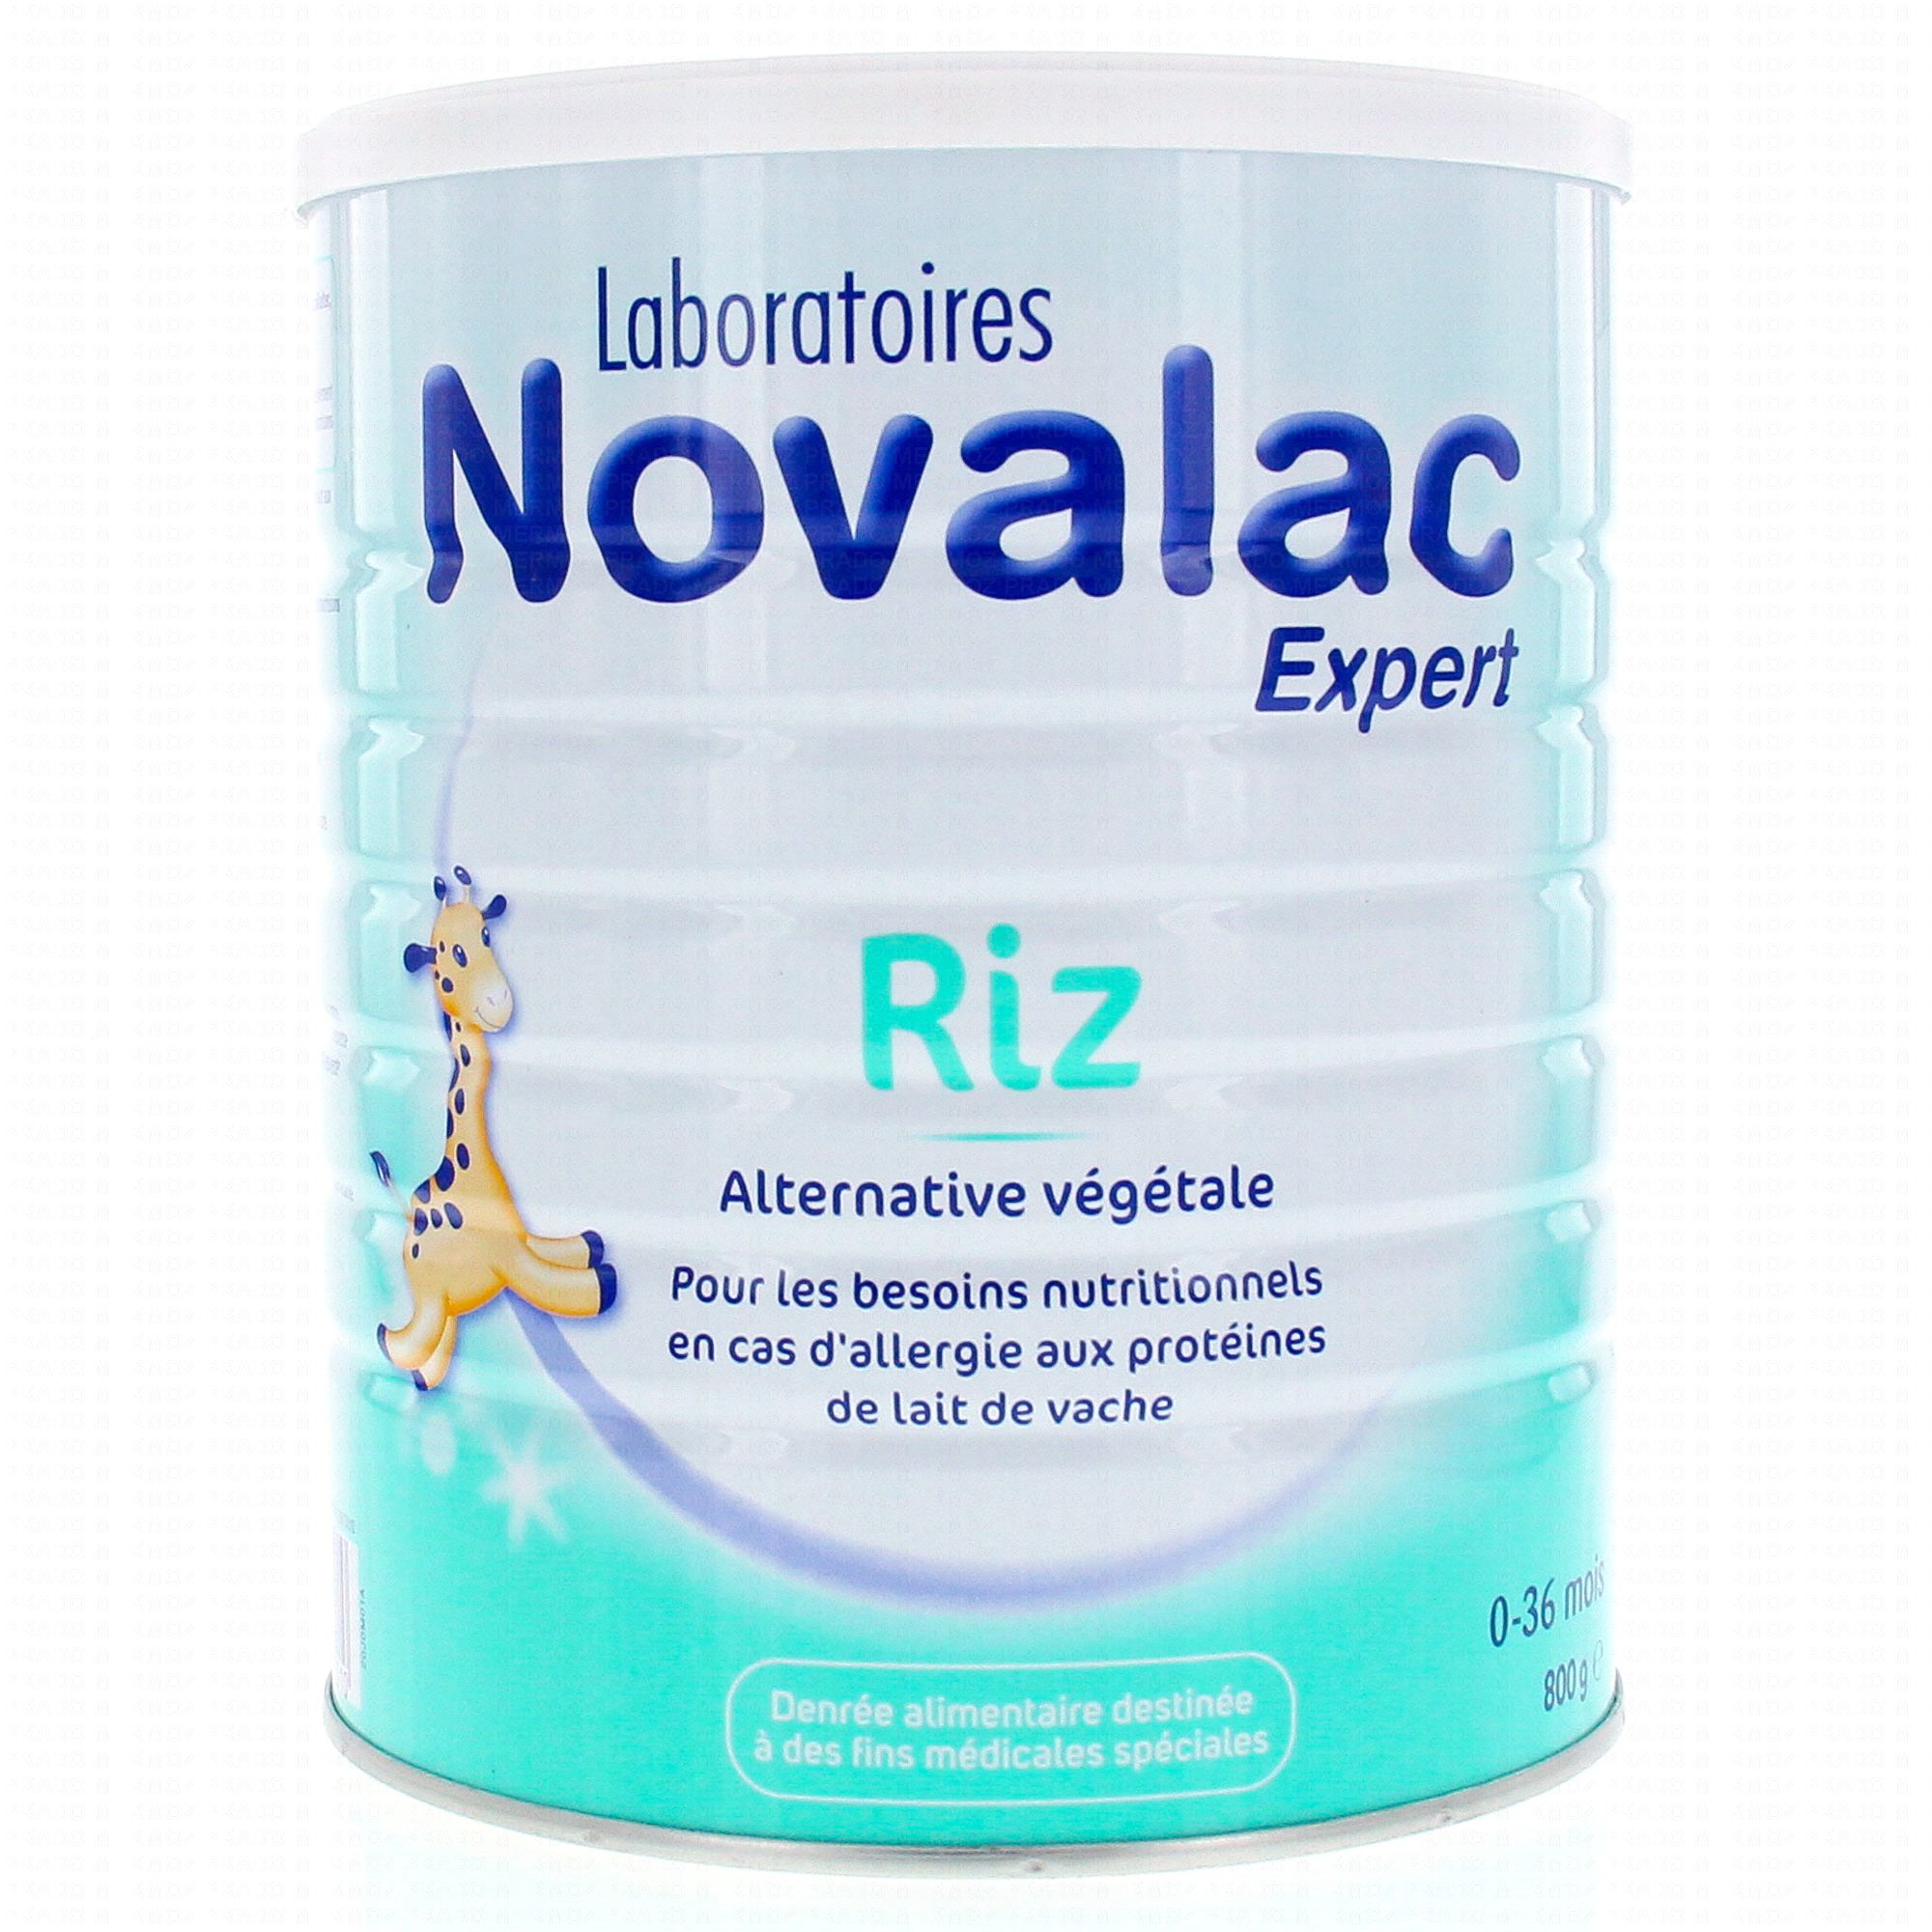 Novalac expert riz